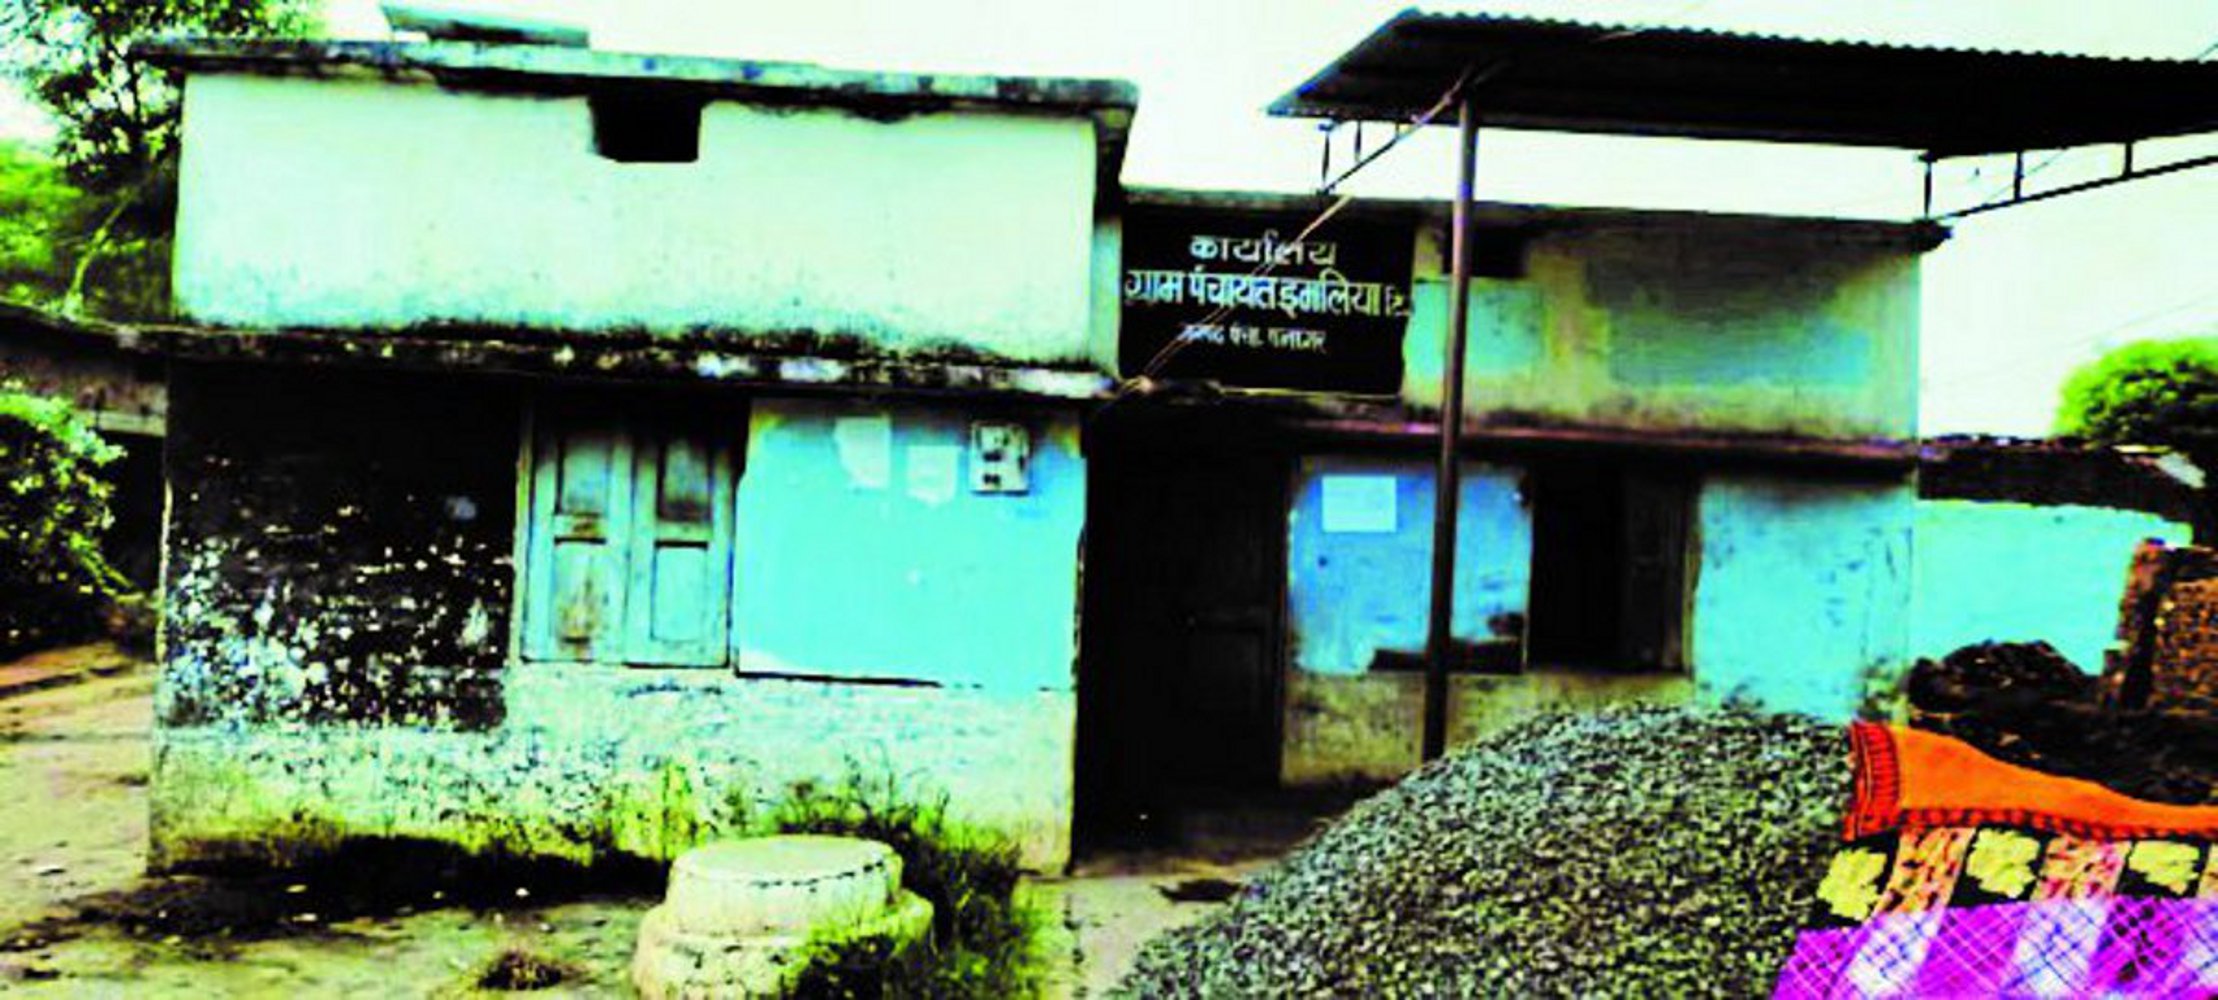 Jabalpur उधार के भवन में ग्राम सरकार